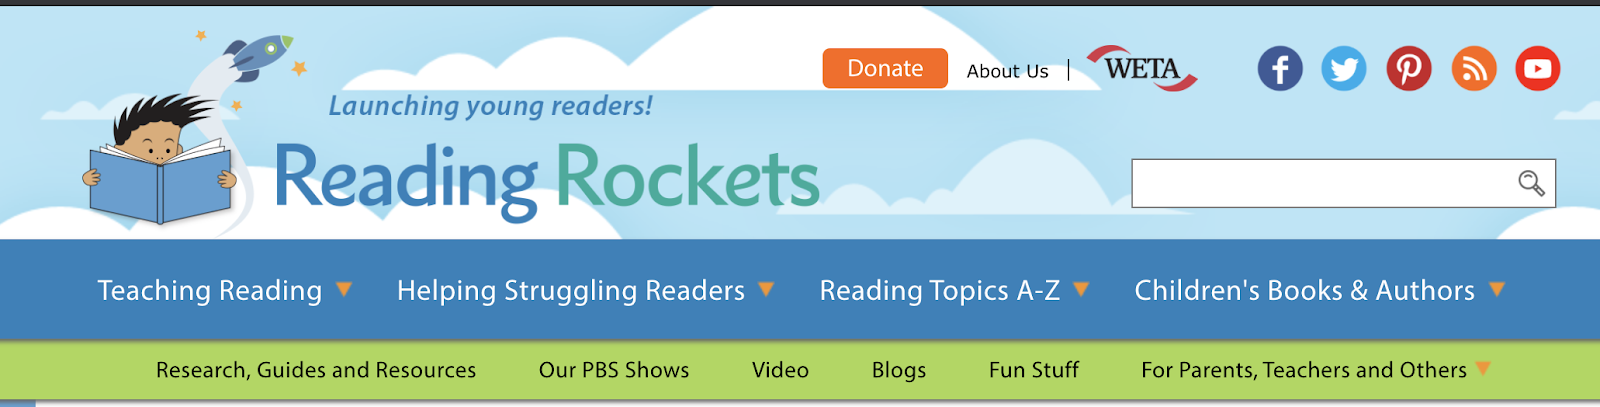 Reading Rockets webpage